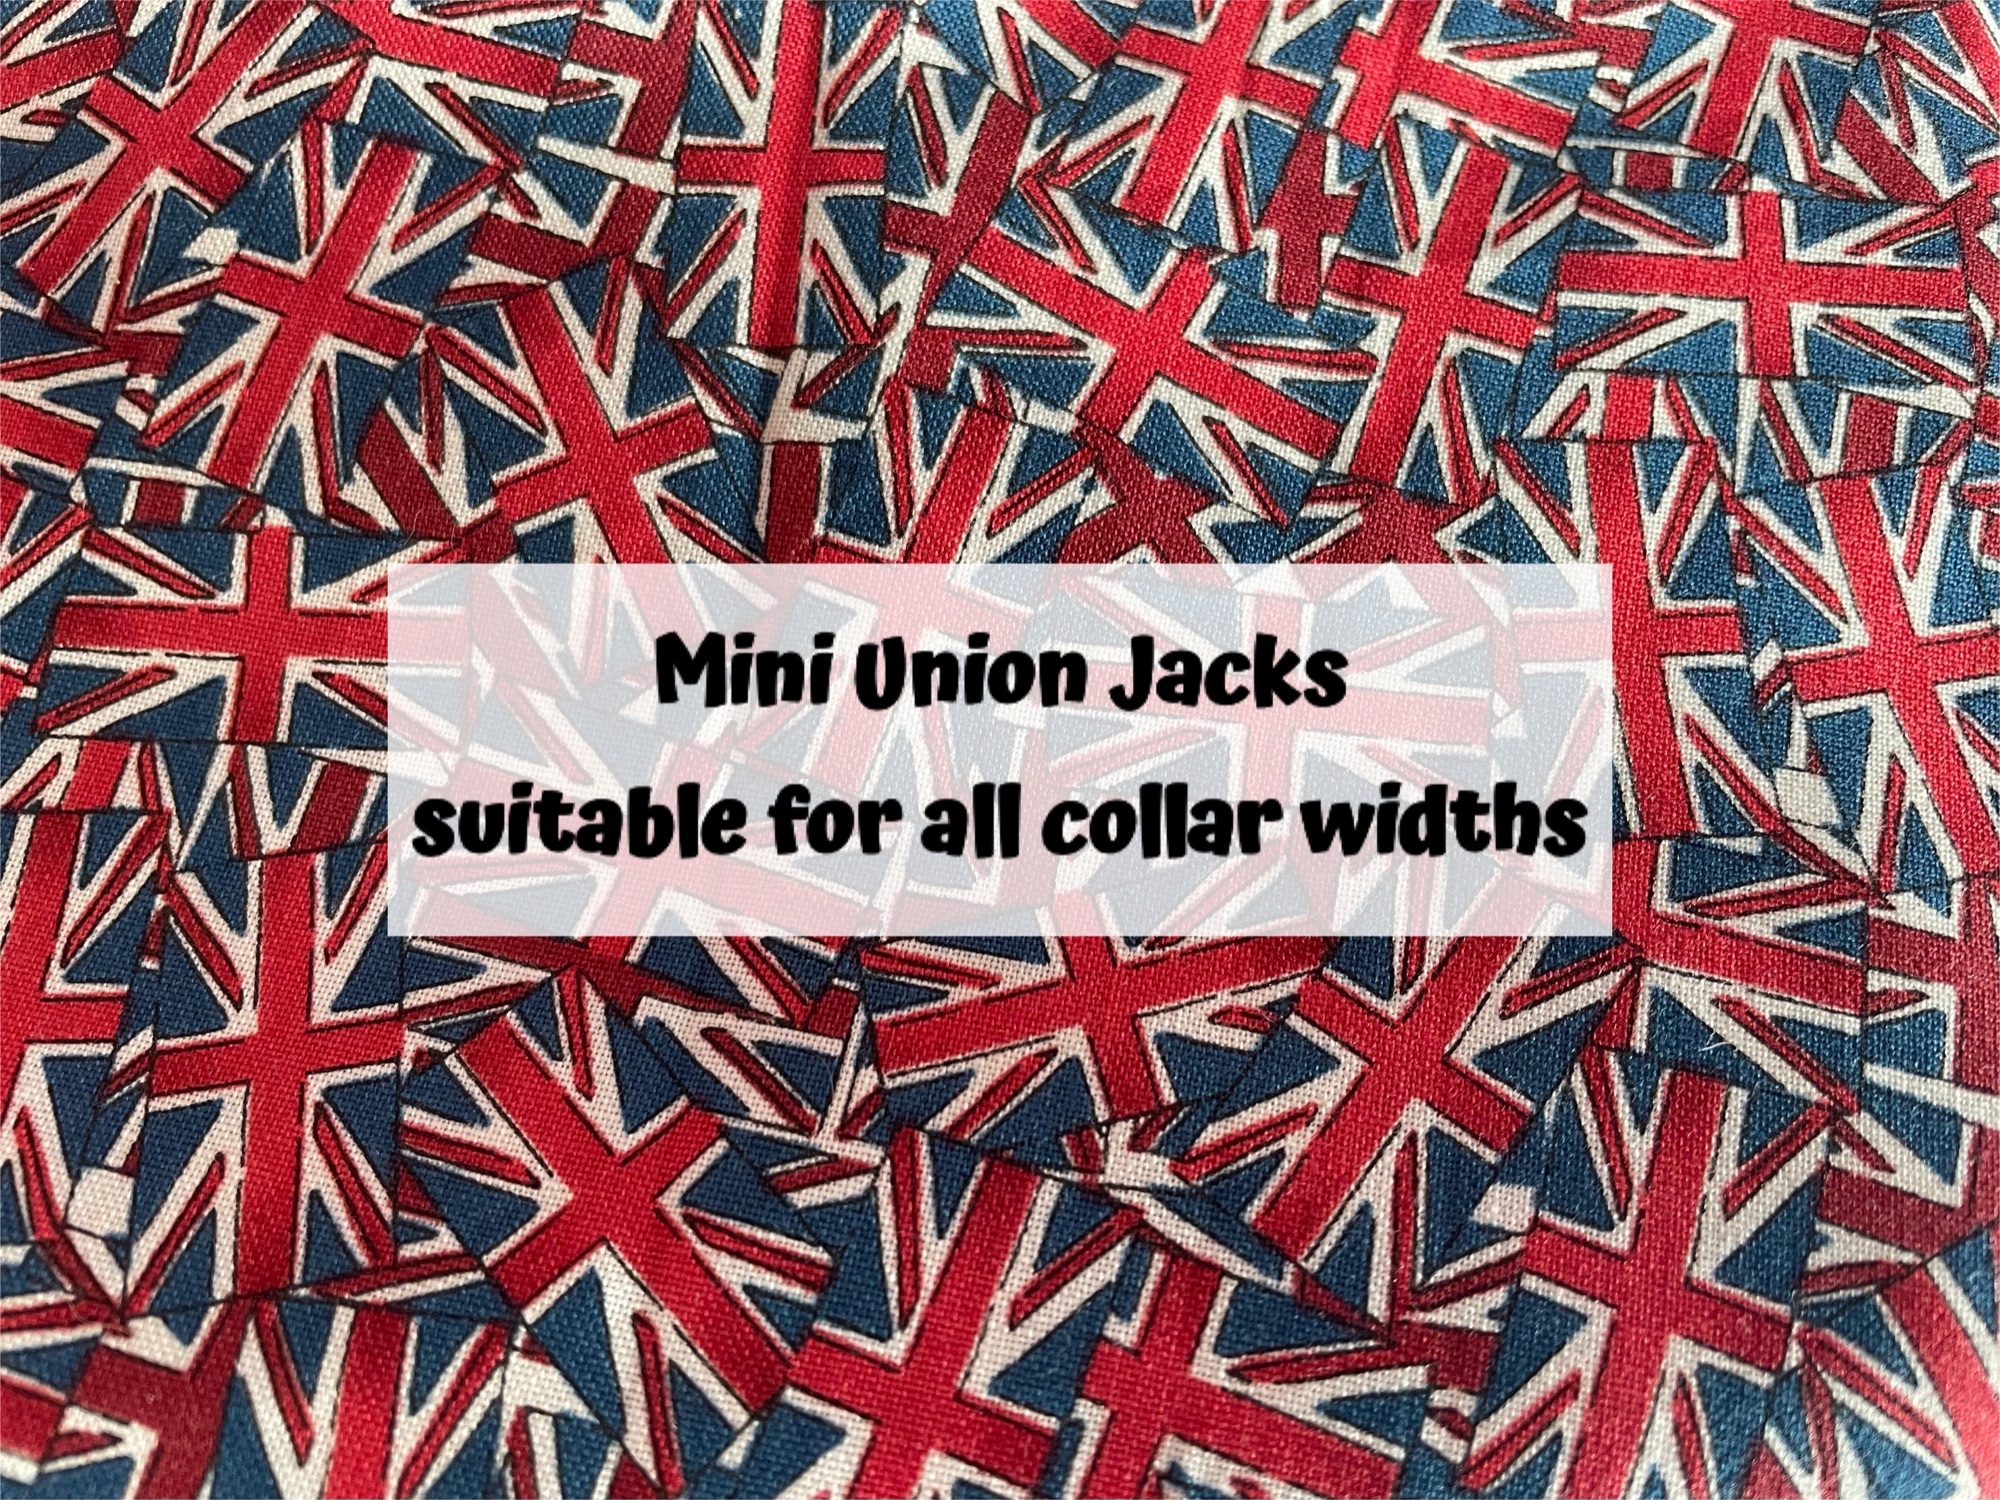 Mini Union Jacks